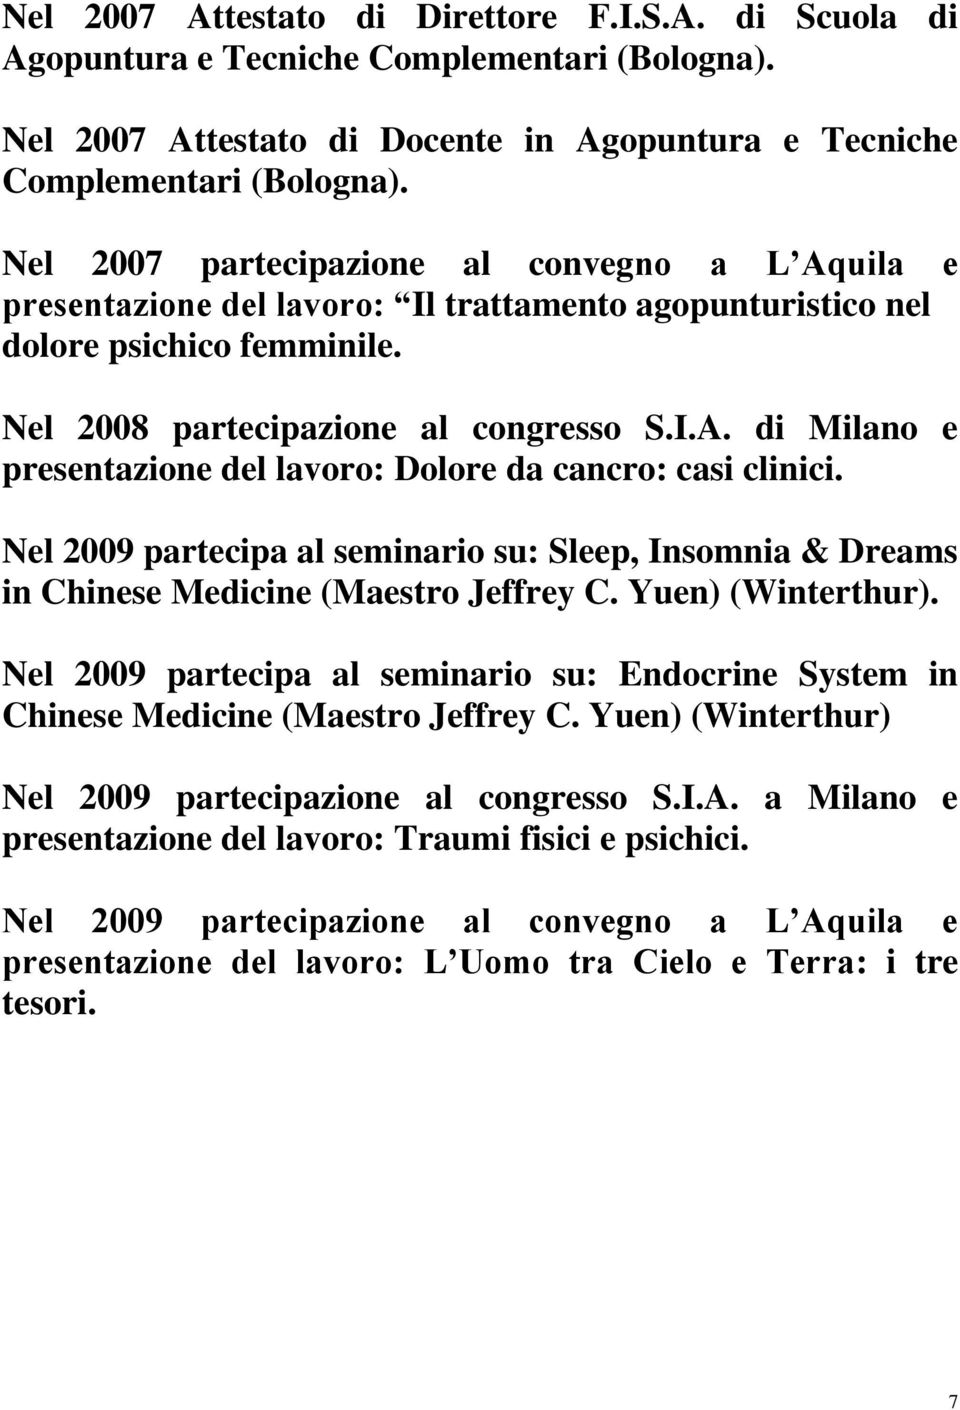 Nel 2009 partecipa al seminario su: Sleep, Insomnia & Dreams in Chinese Medicine (Maestro Jeffrey C. Yuen) (Winterthur).